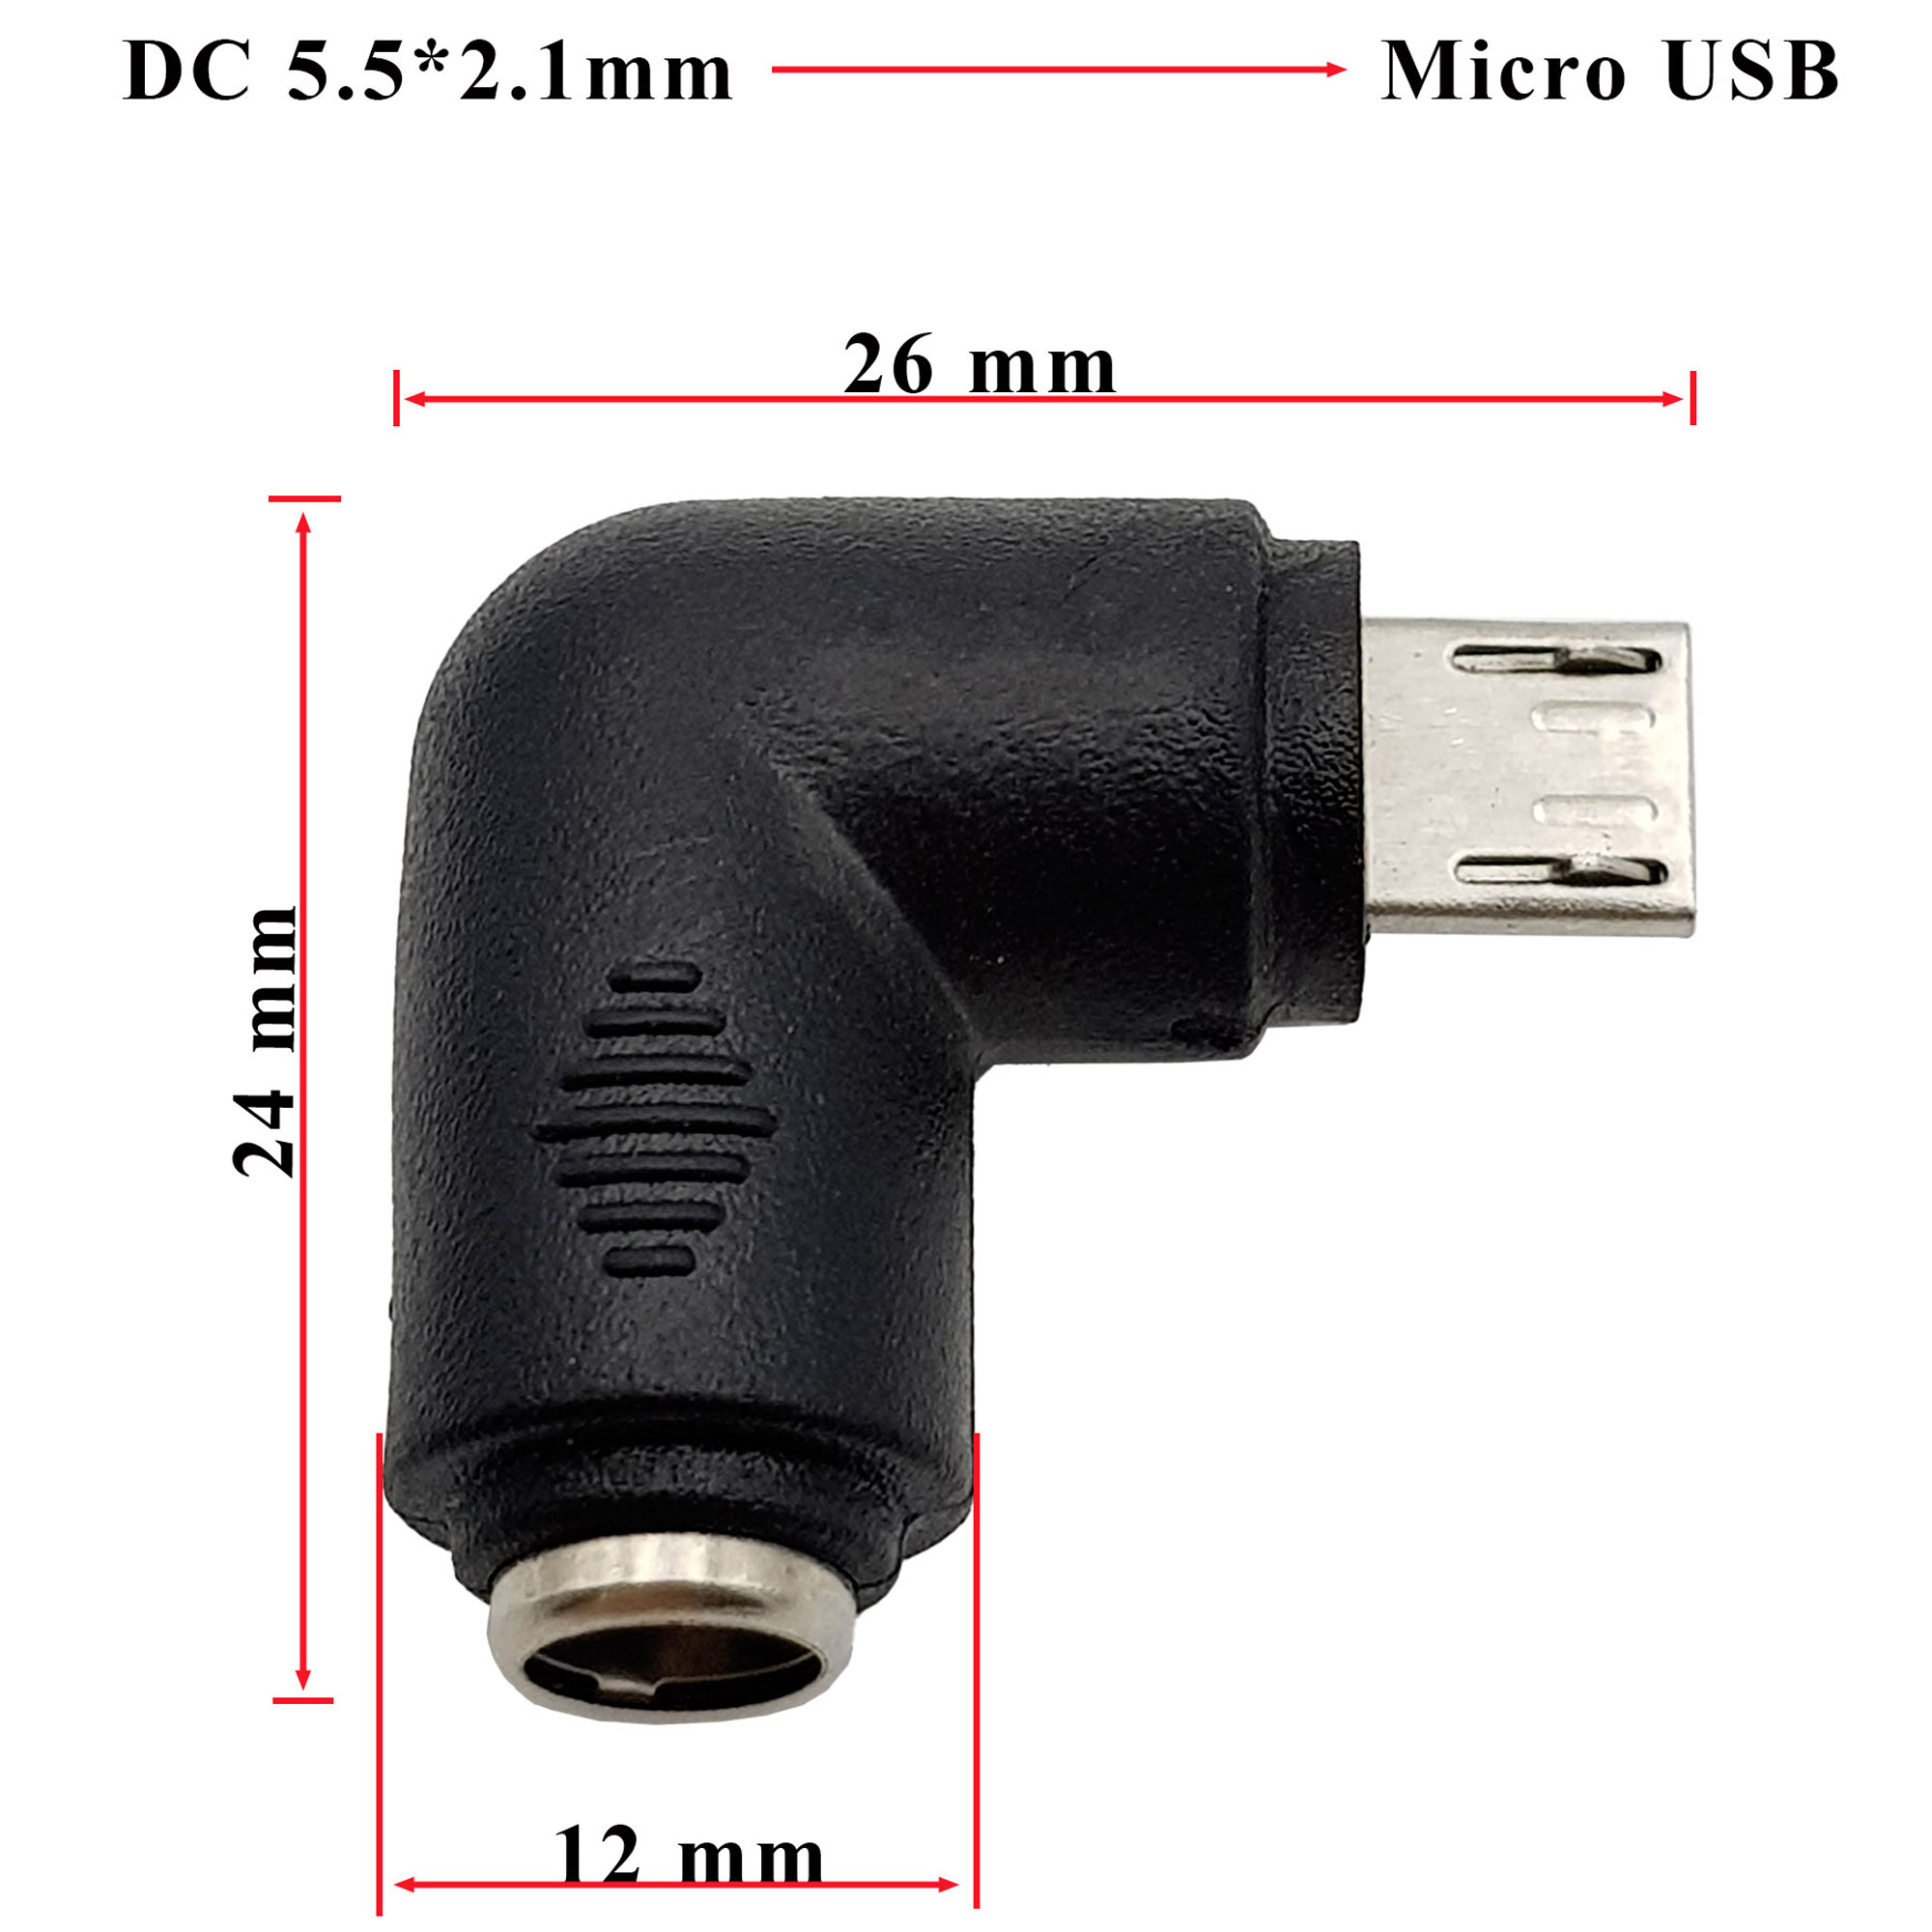 Kích thước Đầu chuyển đổi DC 5.5x2.1mm sang Micro USB vuông góc